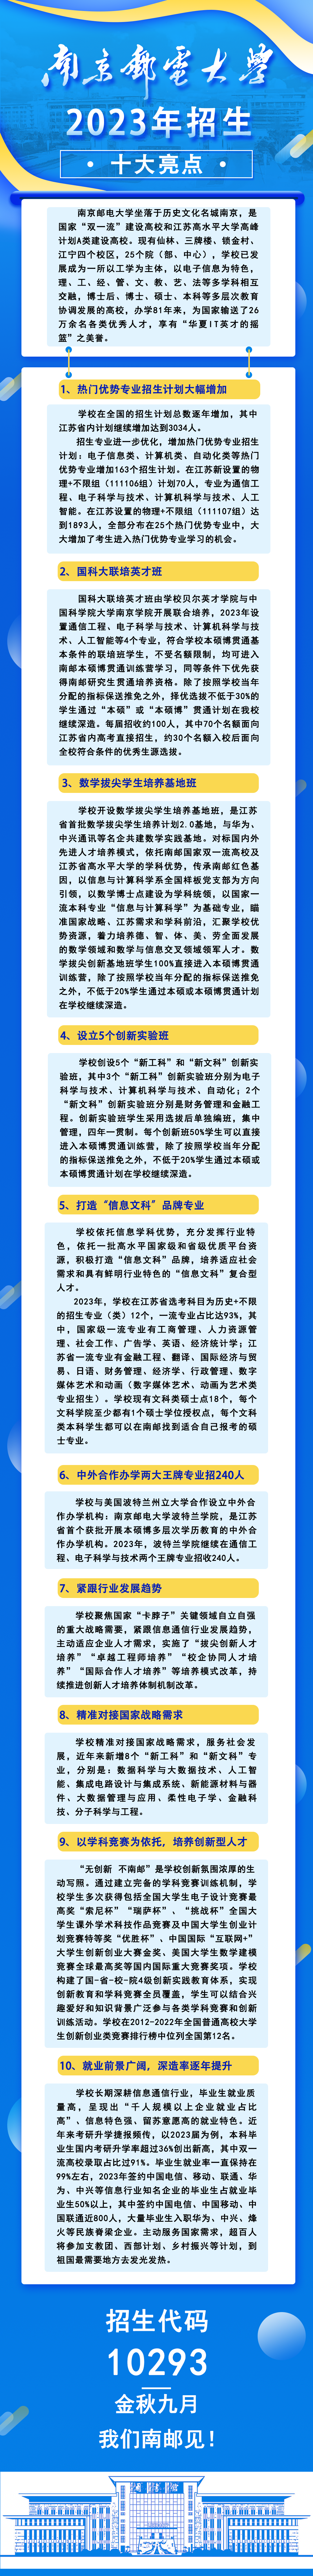 南京邮电大学2023年招生十大亮点